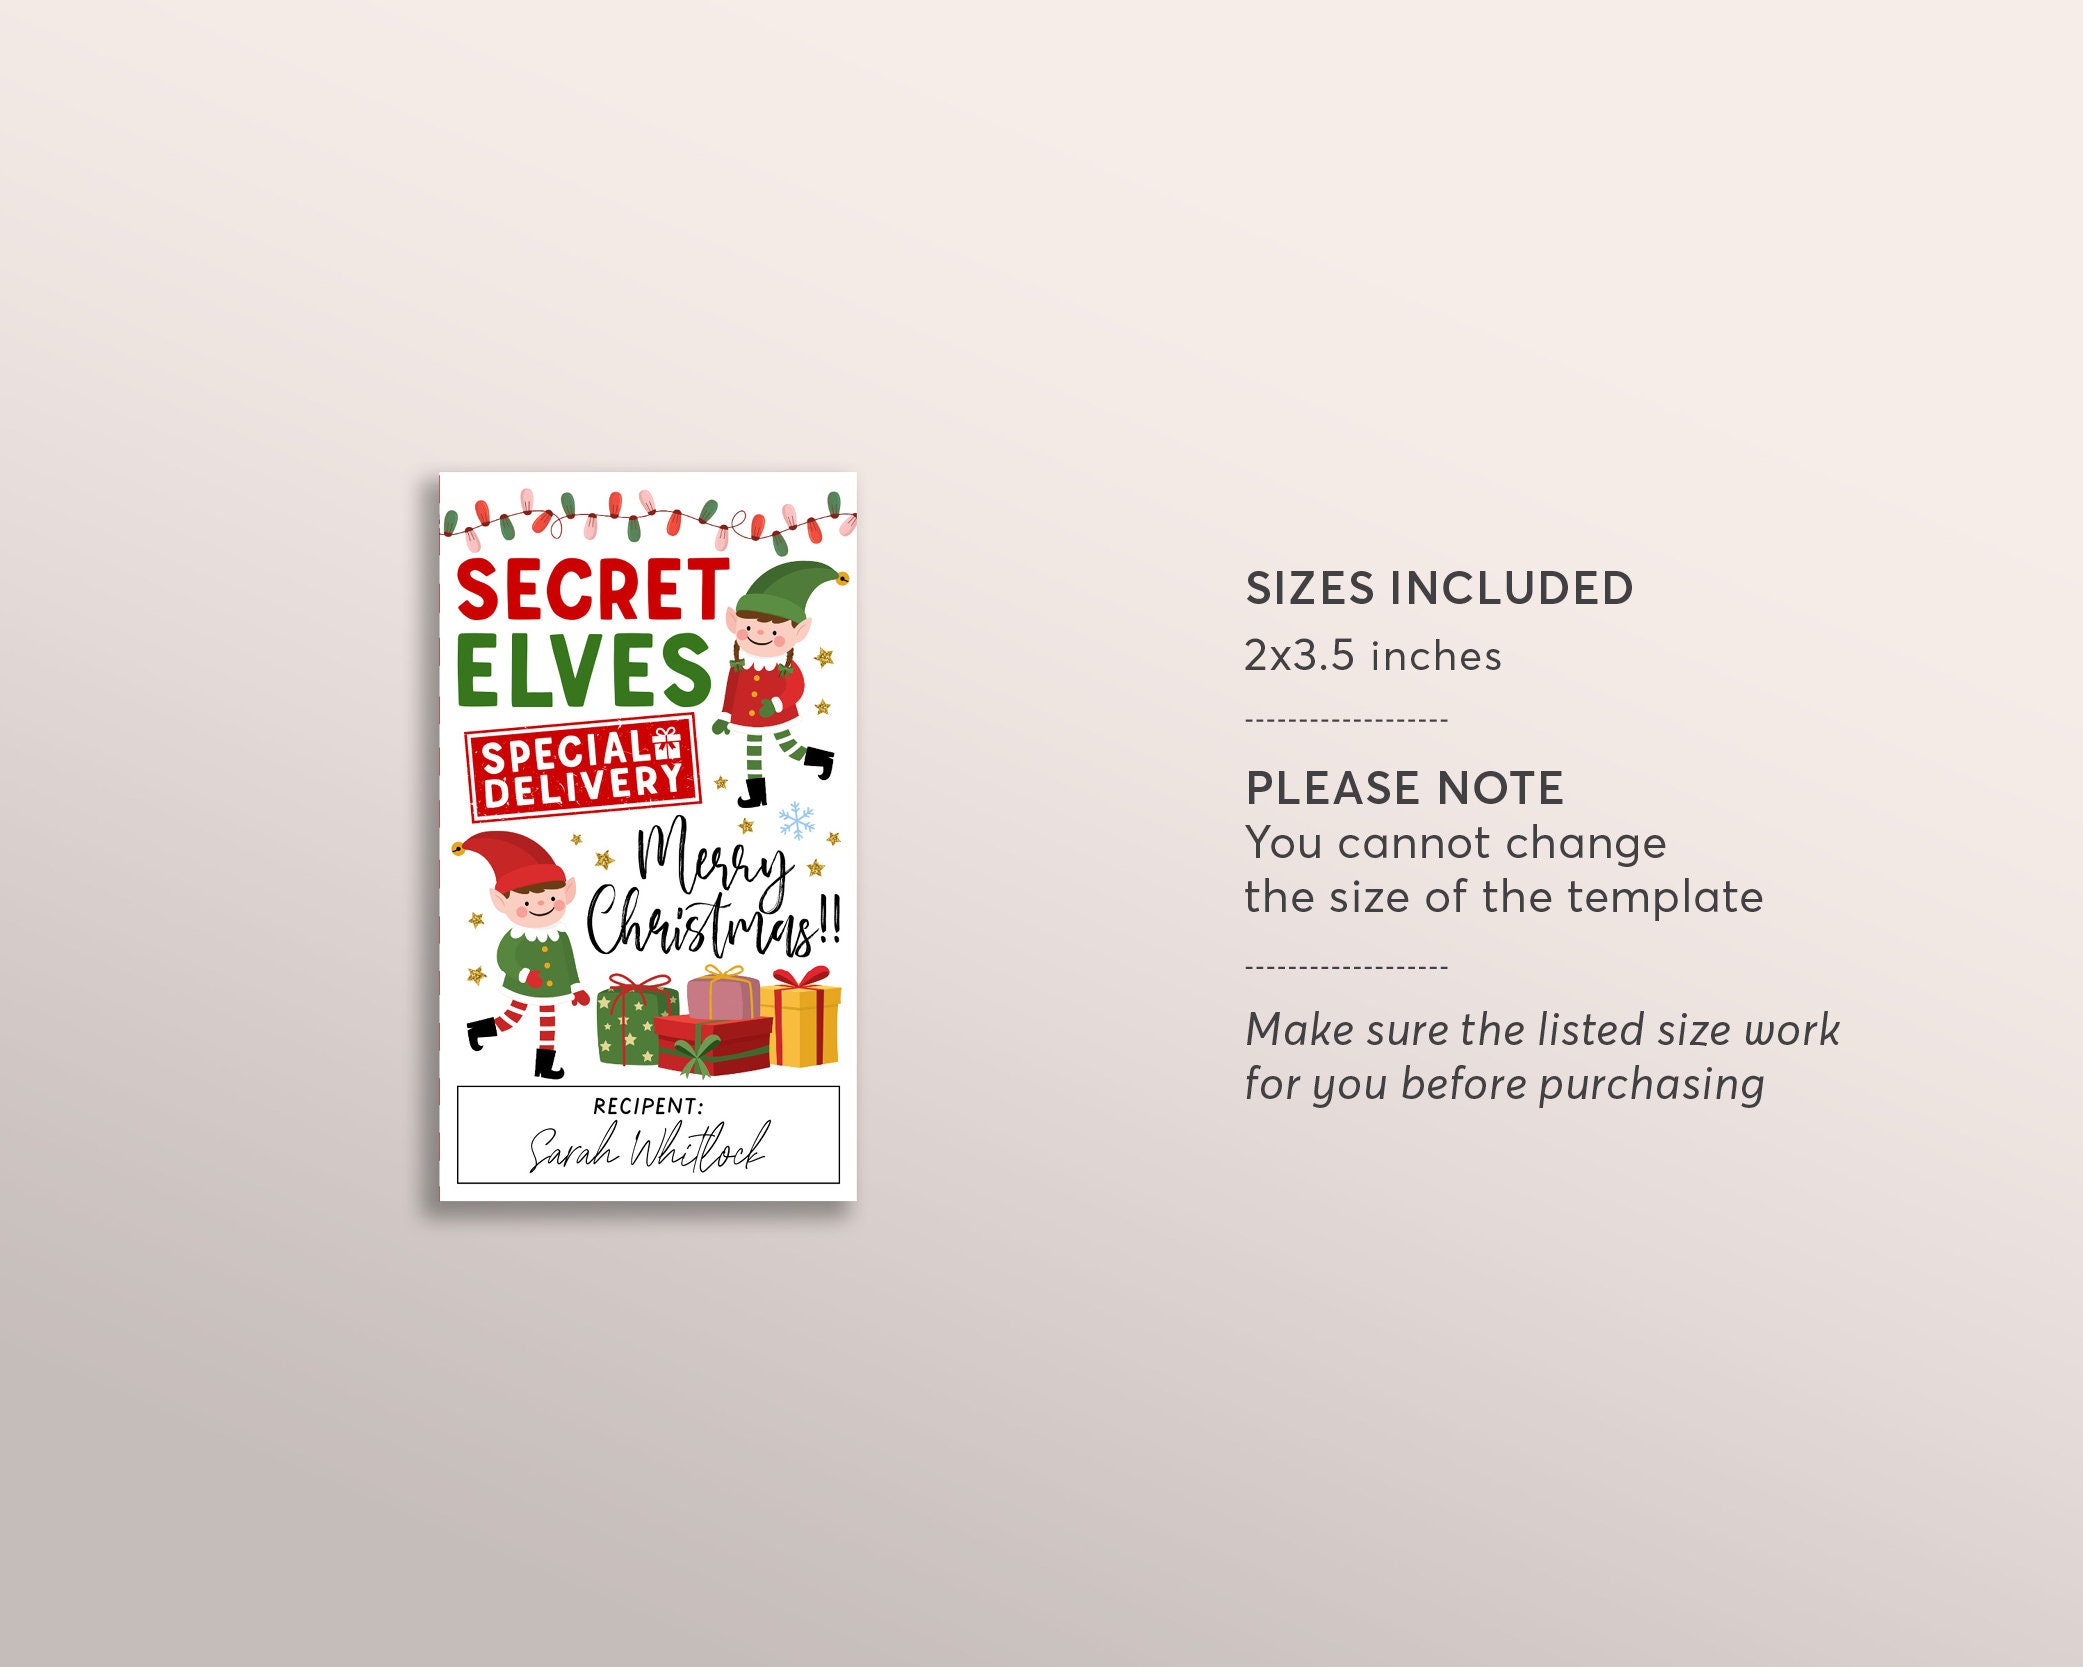 Editable Digital File - Elf Nice List Christmas Gift Tag - Printable –  Chevelly Designs